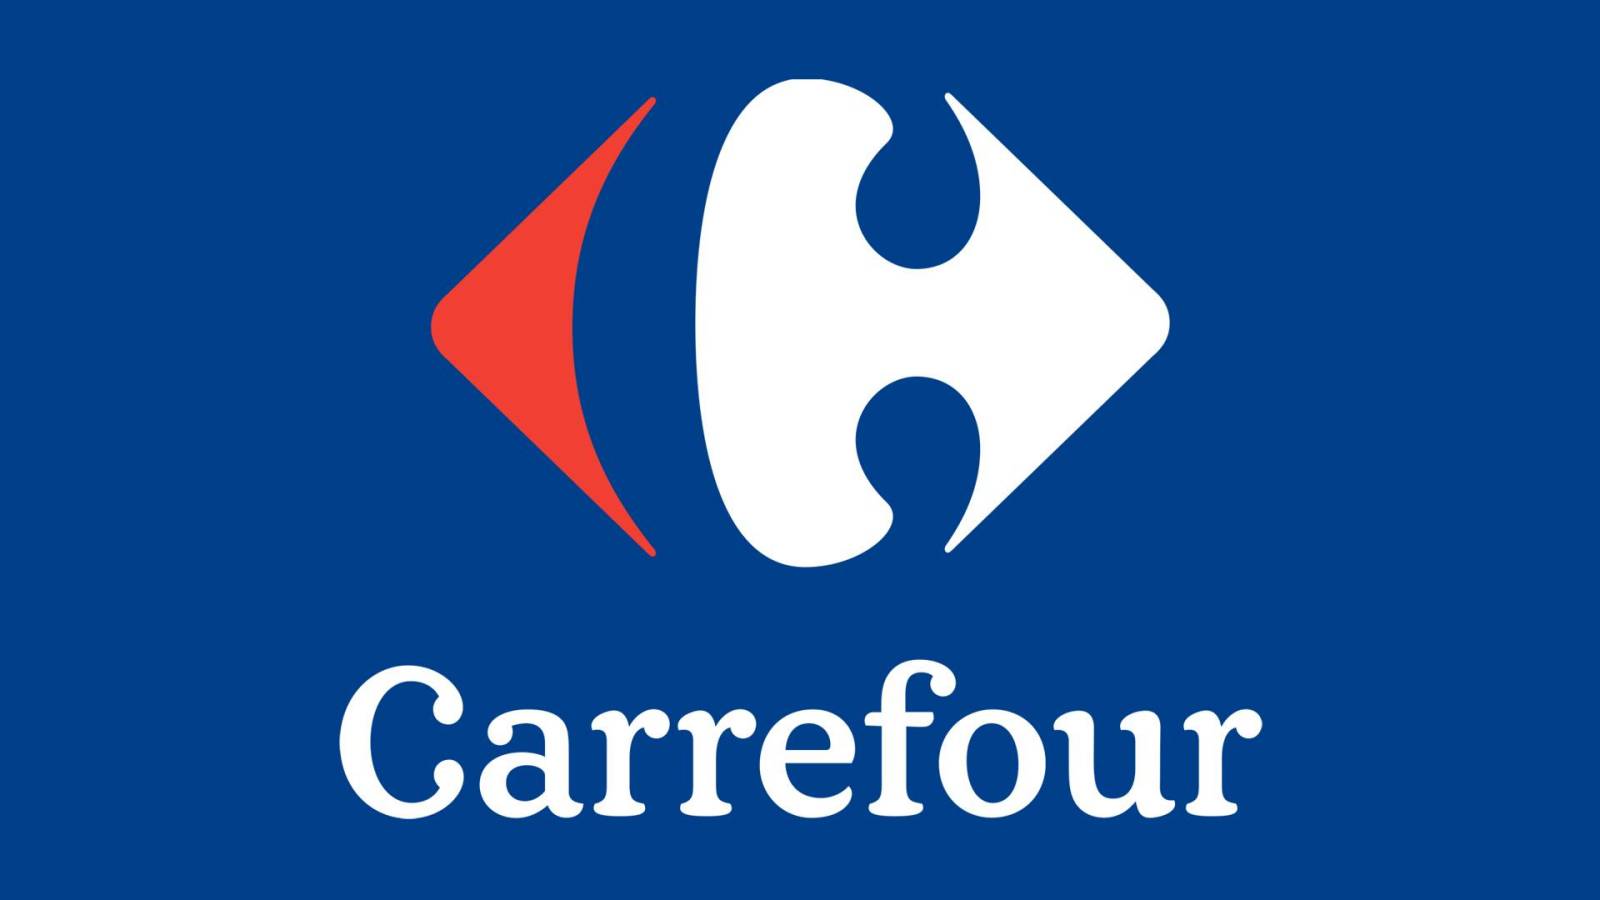 Carrefour Vestea Grozava tilbyder GRATIS til rumænske kunder